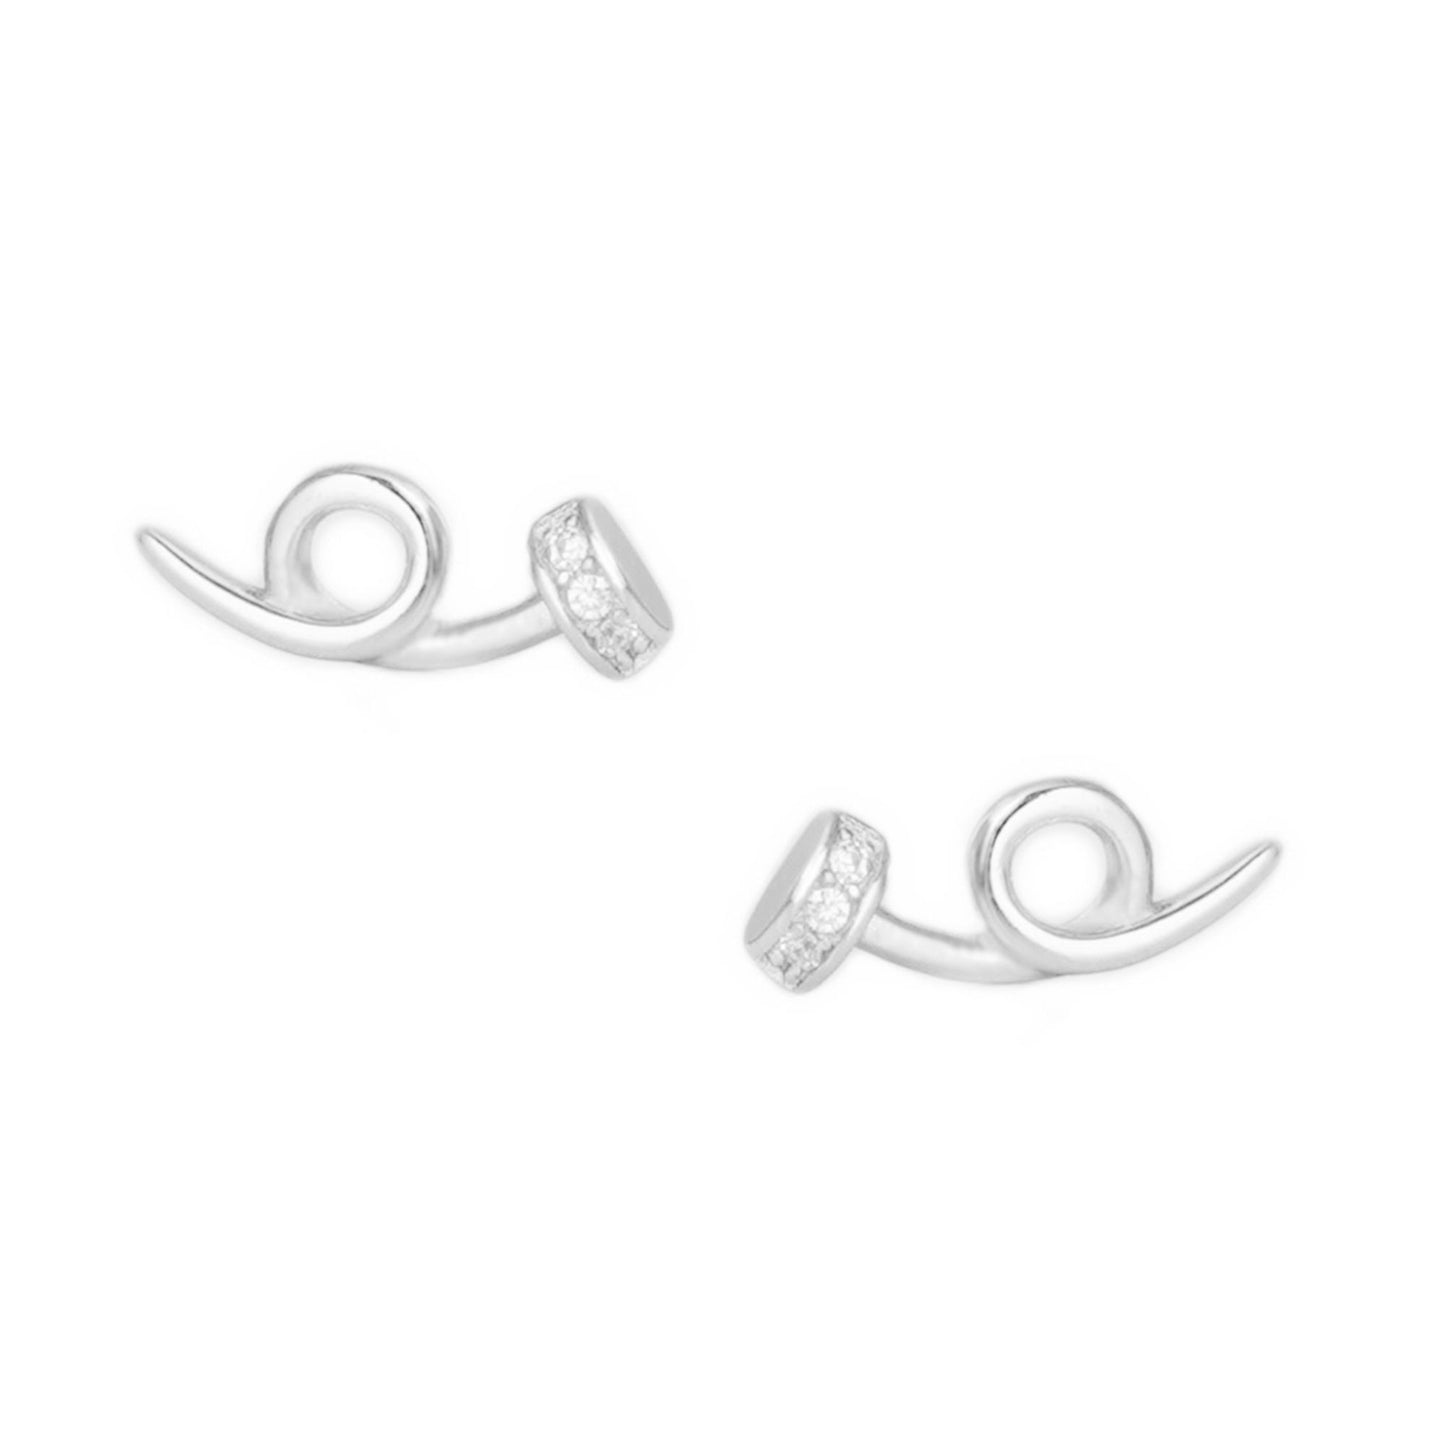 Sterling Silver Twisted Nail Spiral Pin CZ Stud Earrings - Minimalist Dainty Ear Piercing Jewelry